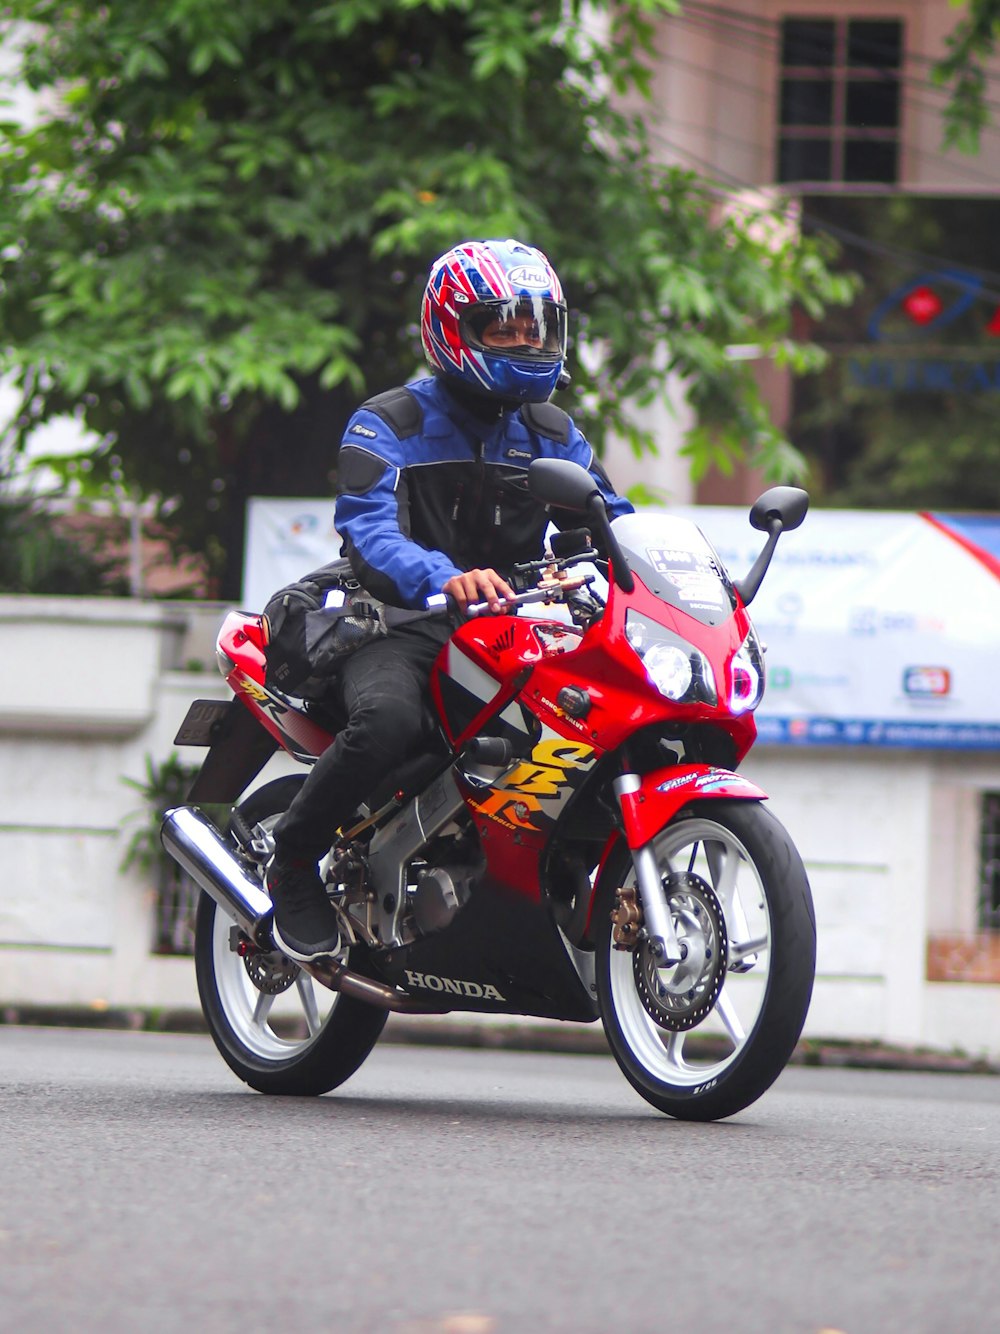 Un hombre conduciendo una motocicleta roja por una calle